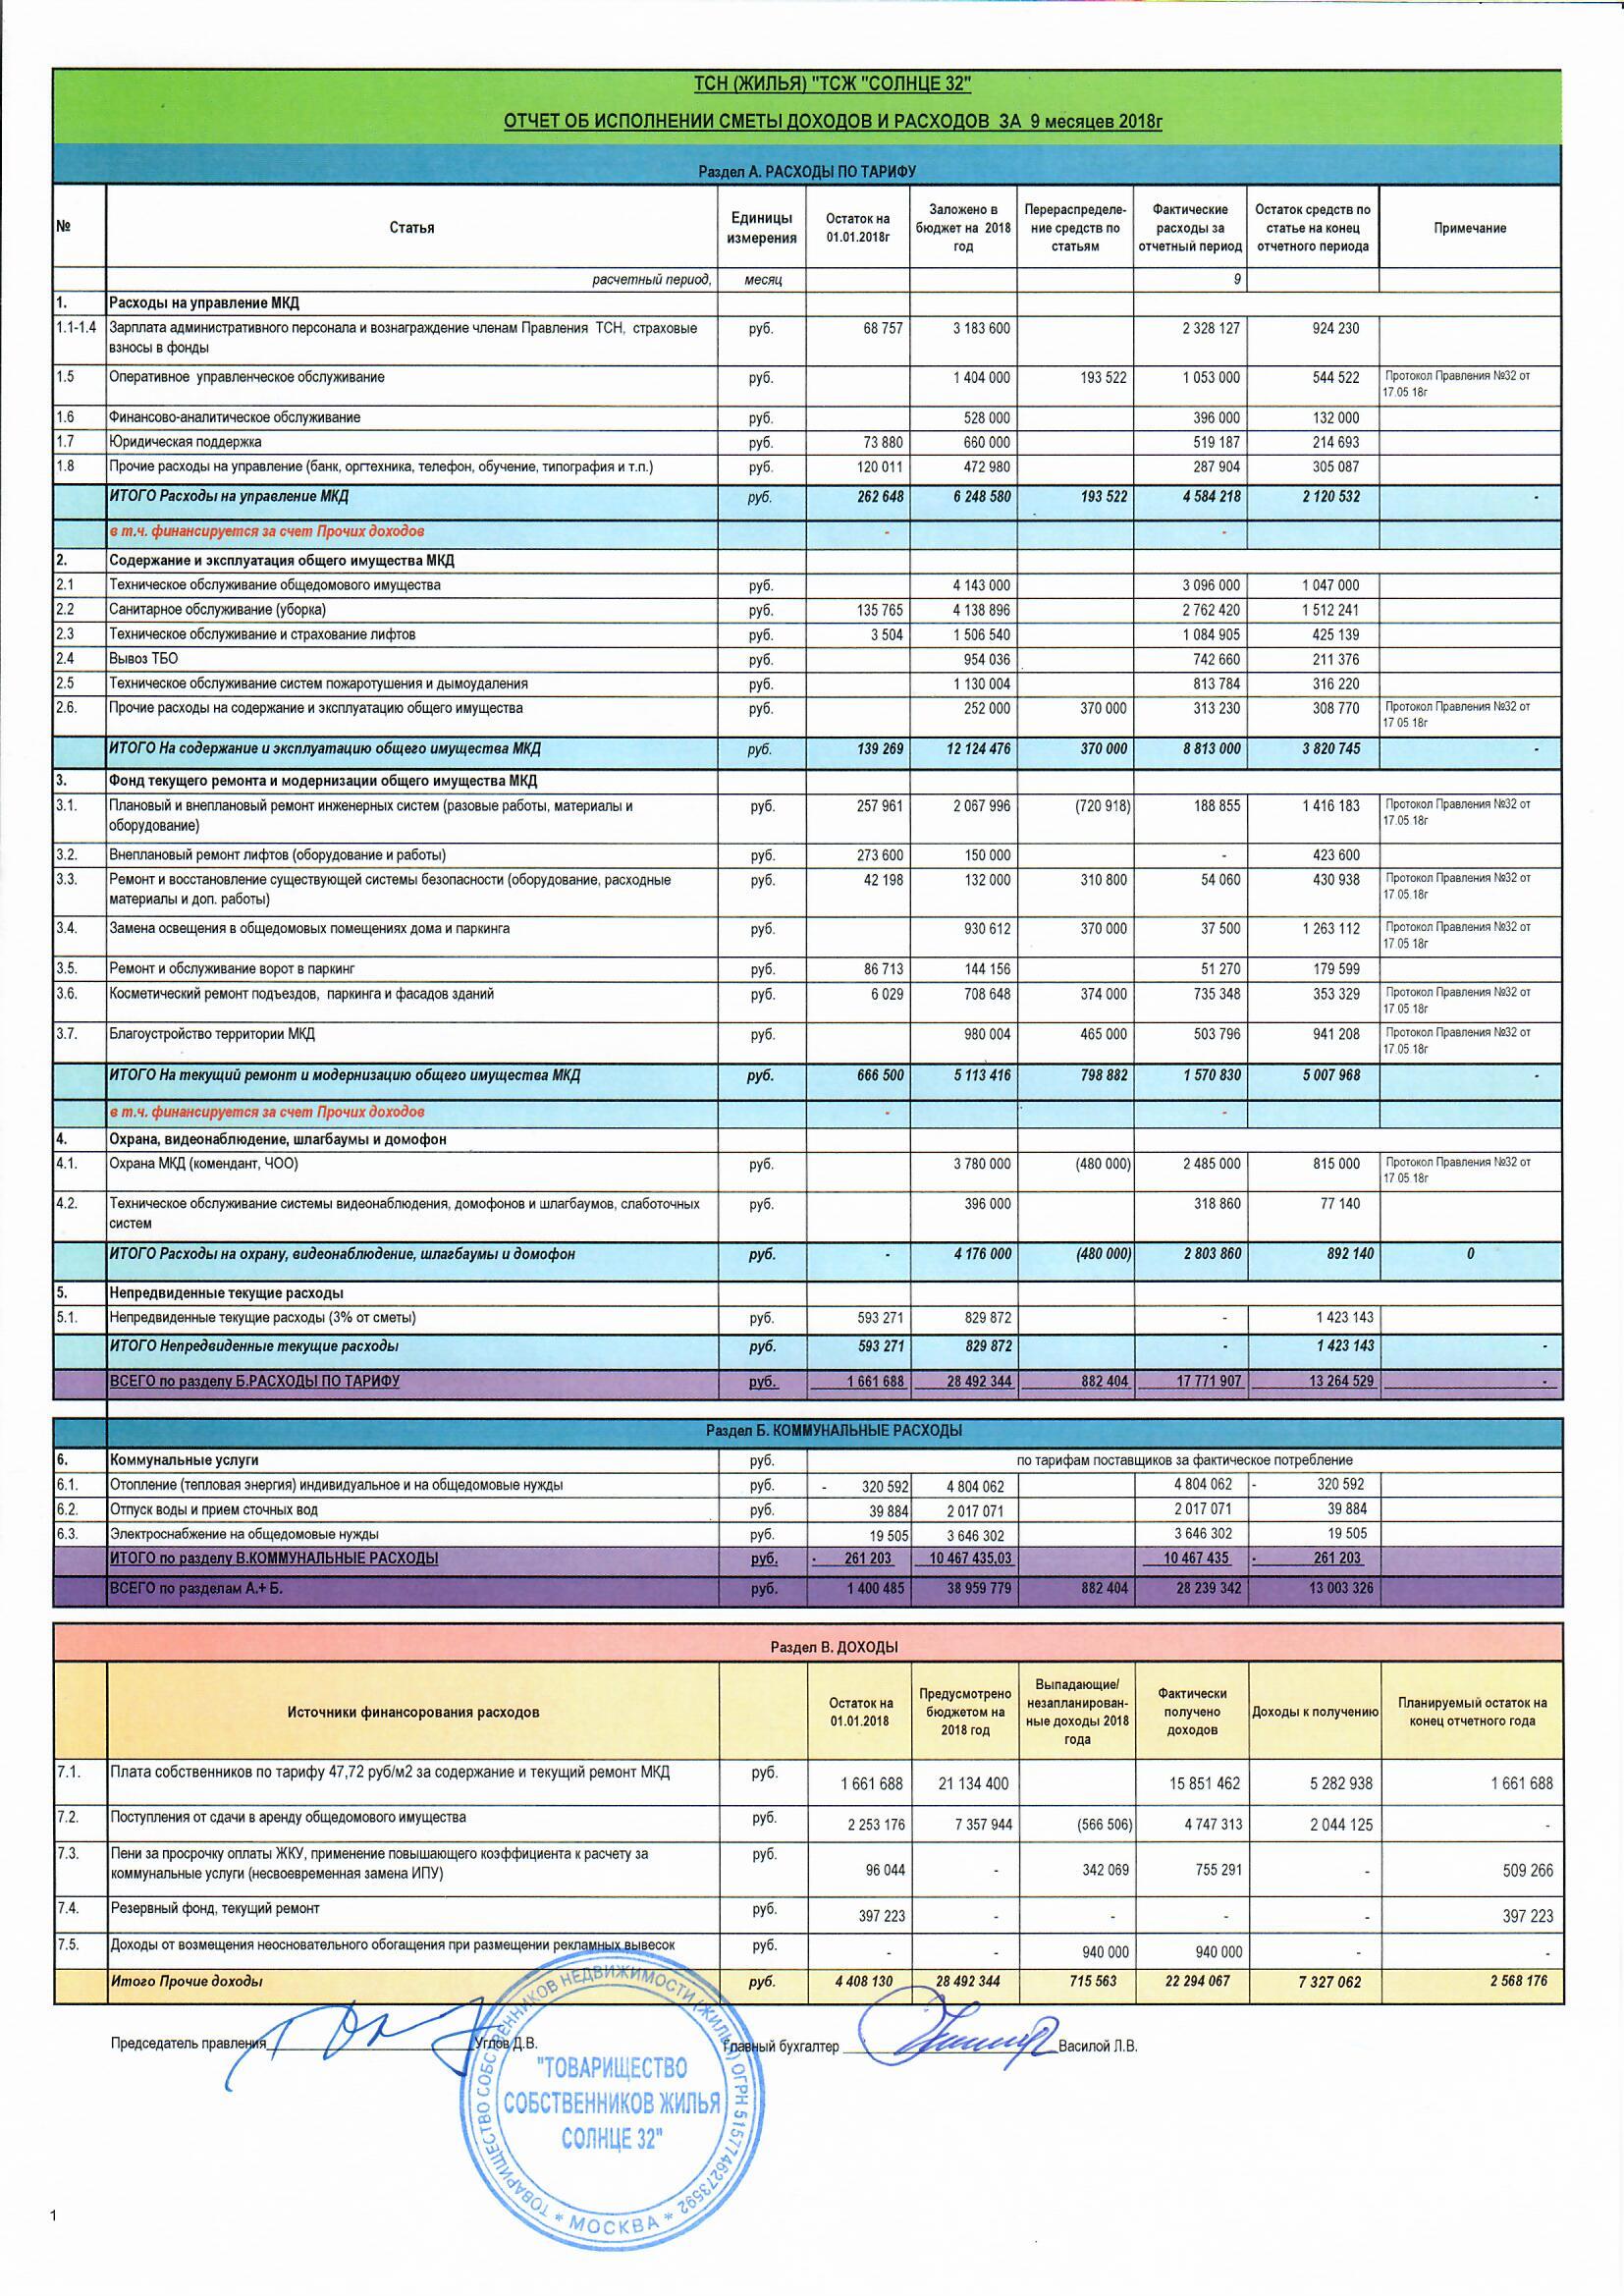 Отчет об исполнении сметы доходов и расходов за 9 месяцев 2018 года